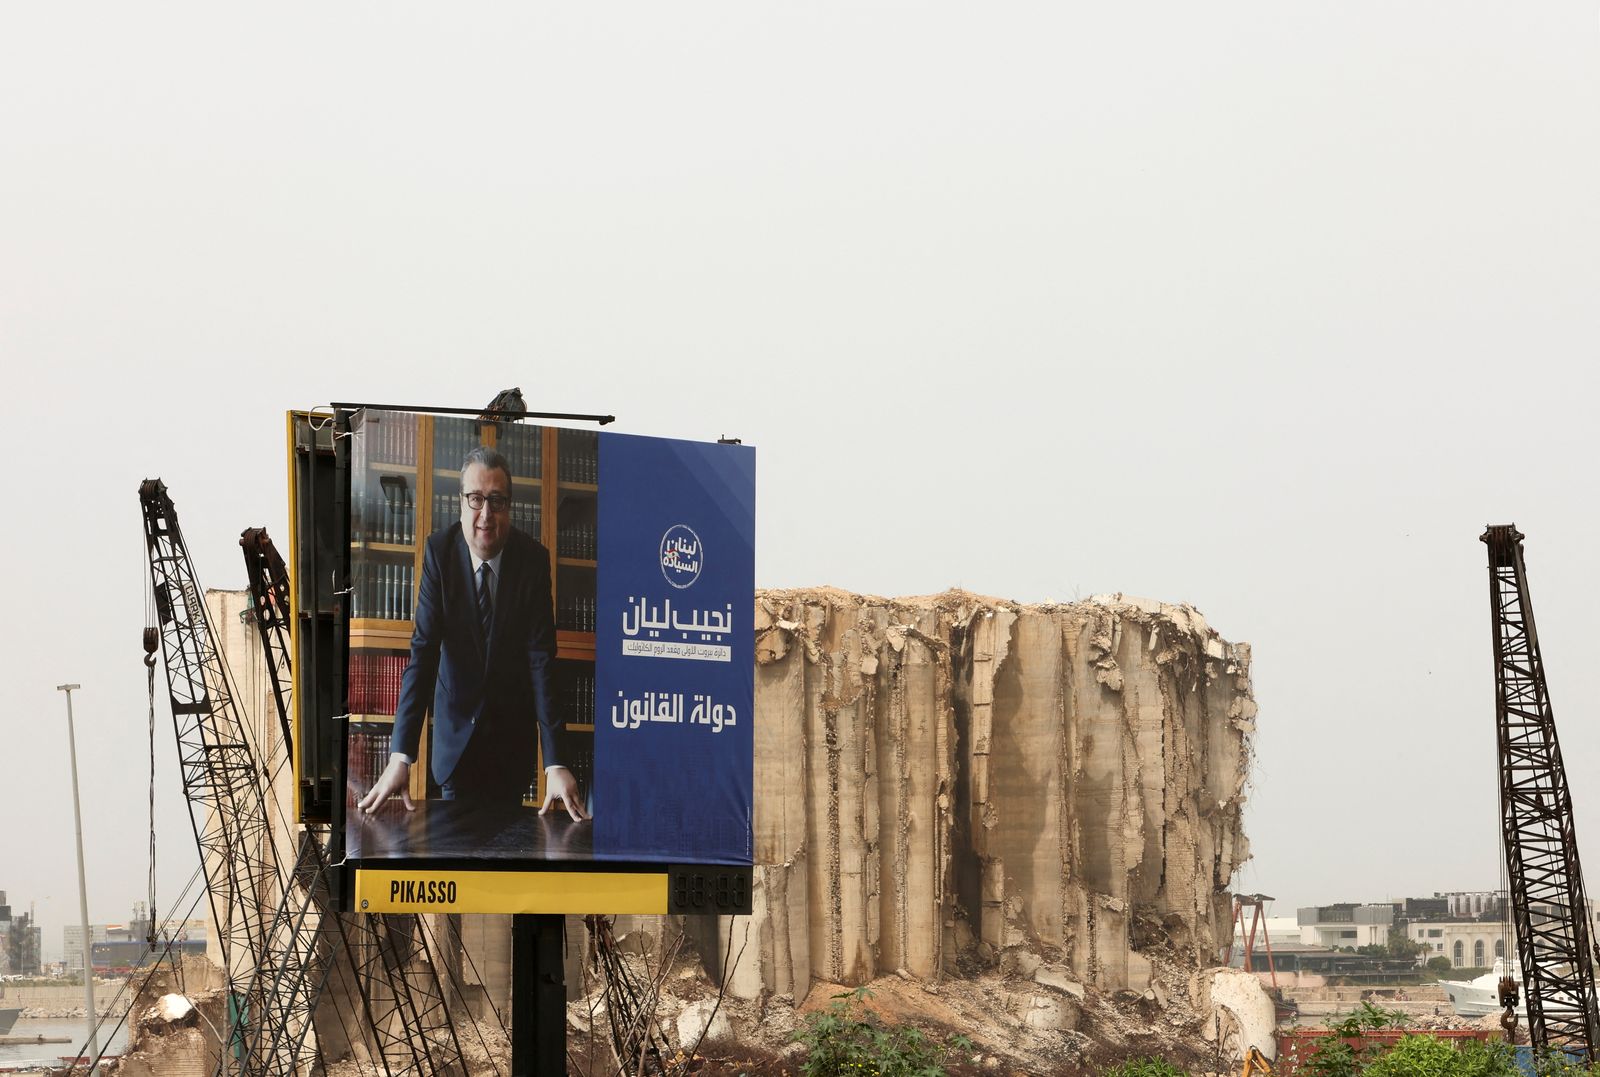 لوحة إعلانية تُروج لأحد المرشحين للانتخابات النيابية اللبنانية وفي الخلفية أطلال مرفأ بيروت الذي انفجر عام قبل نحو عامين- 18 أبريل 2022 - REUTERS